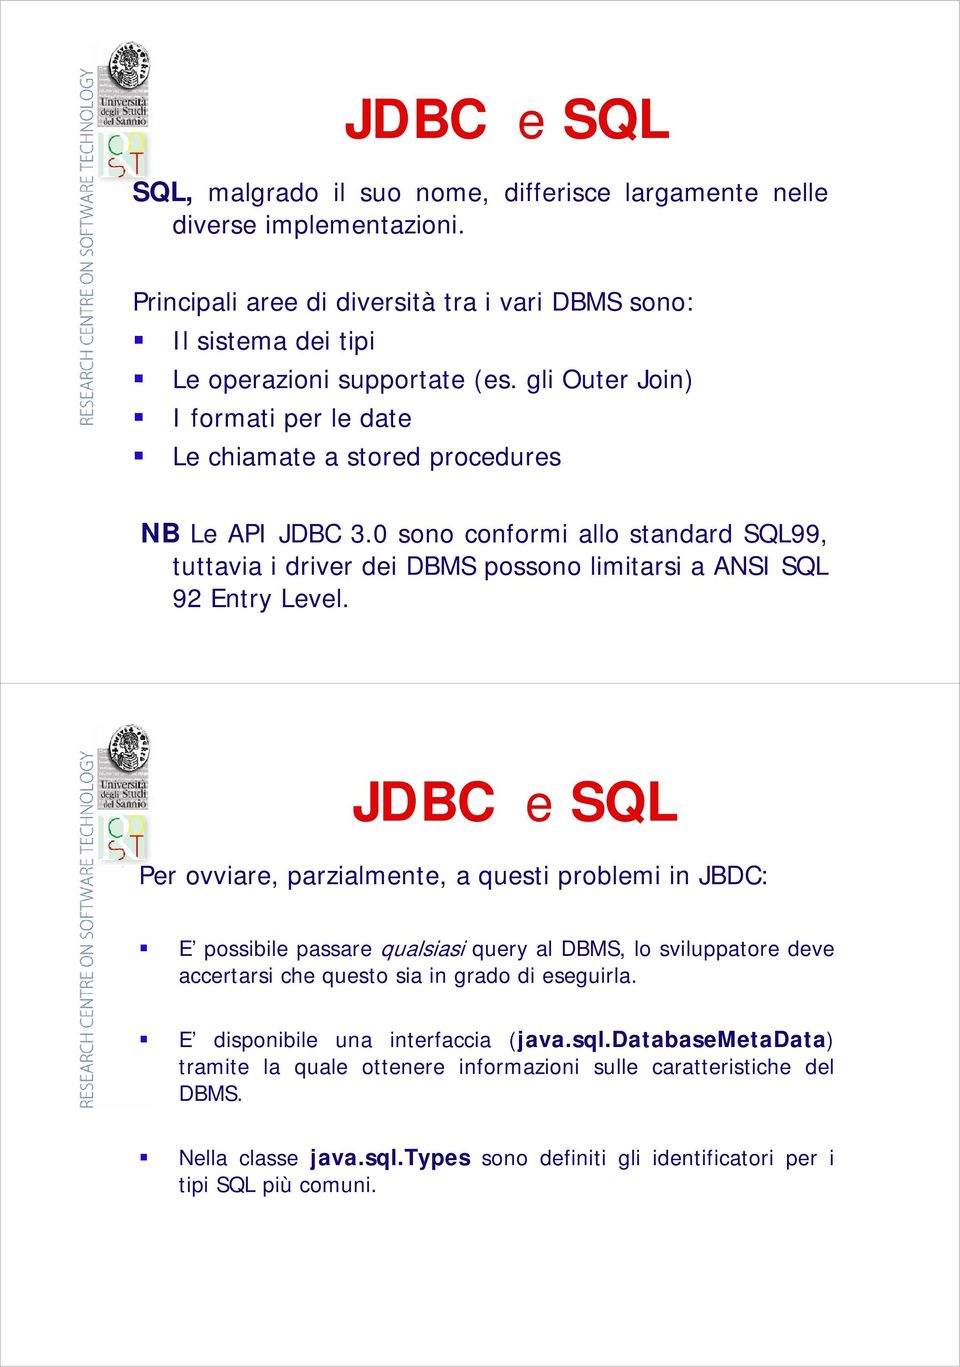 JDBC e SQL Per ovviare, parzialmente, a questi problemi in JBDC: E possibile passare qualsiasi query al DBMS, lo sviluppatore deve accertarsi che questo sia in grado di eseguirla.